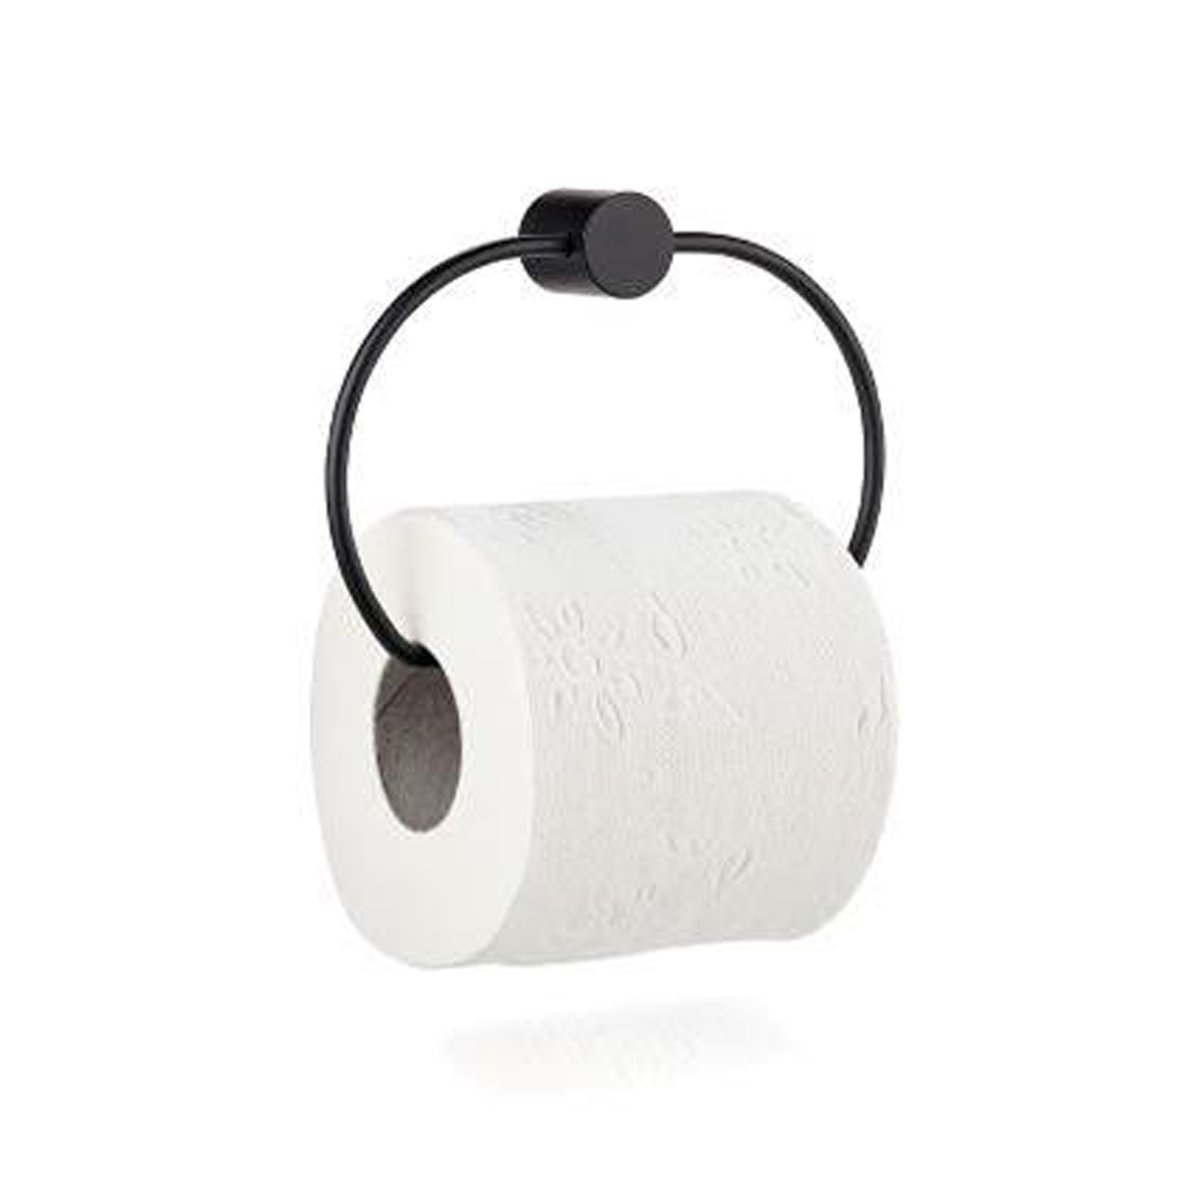 Zone - Hooked On Rings Toiletpapir Holder - Black (332029)